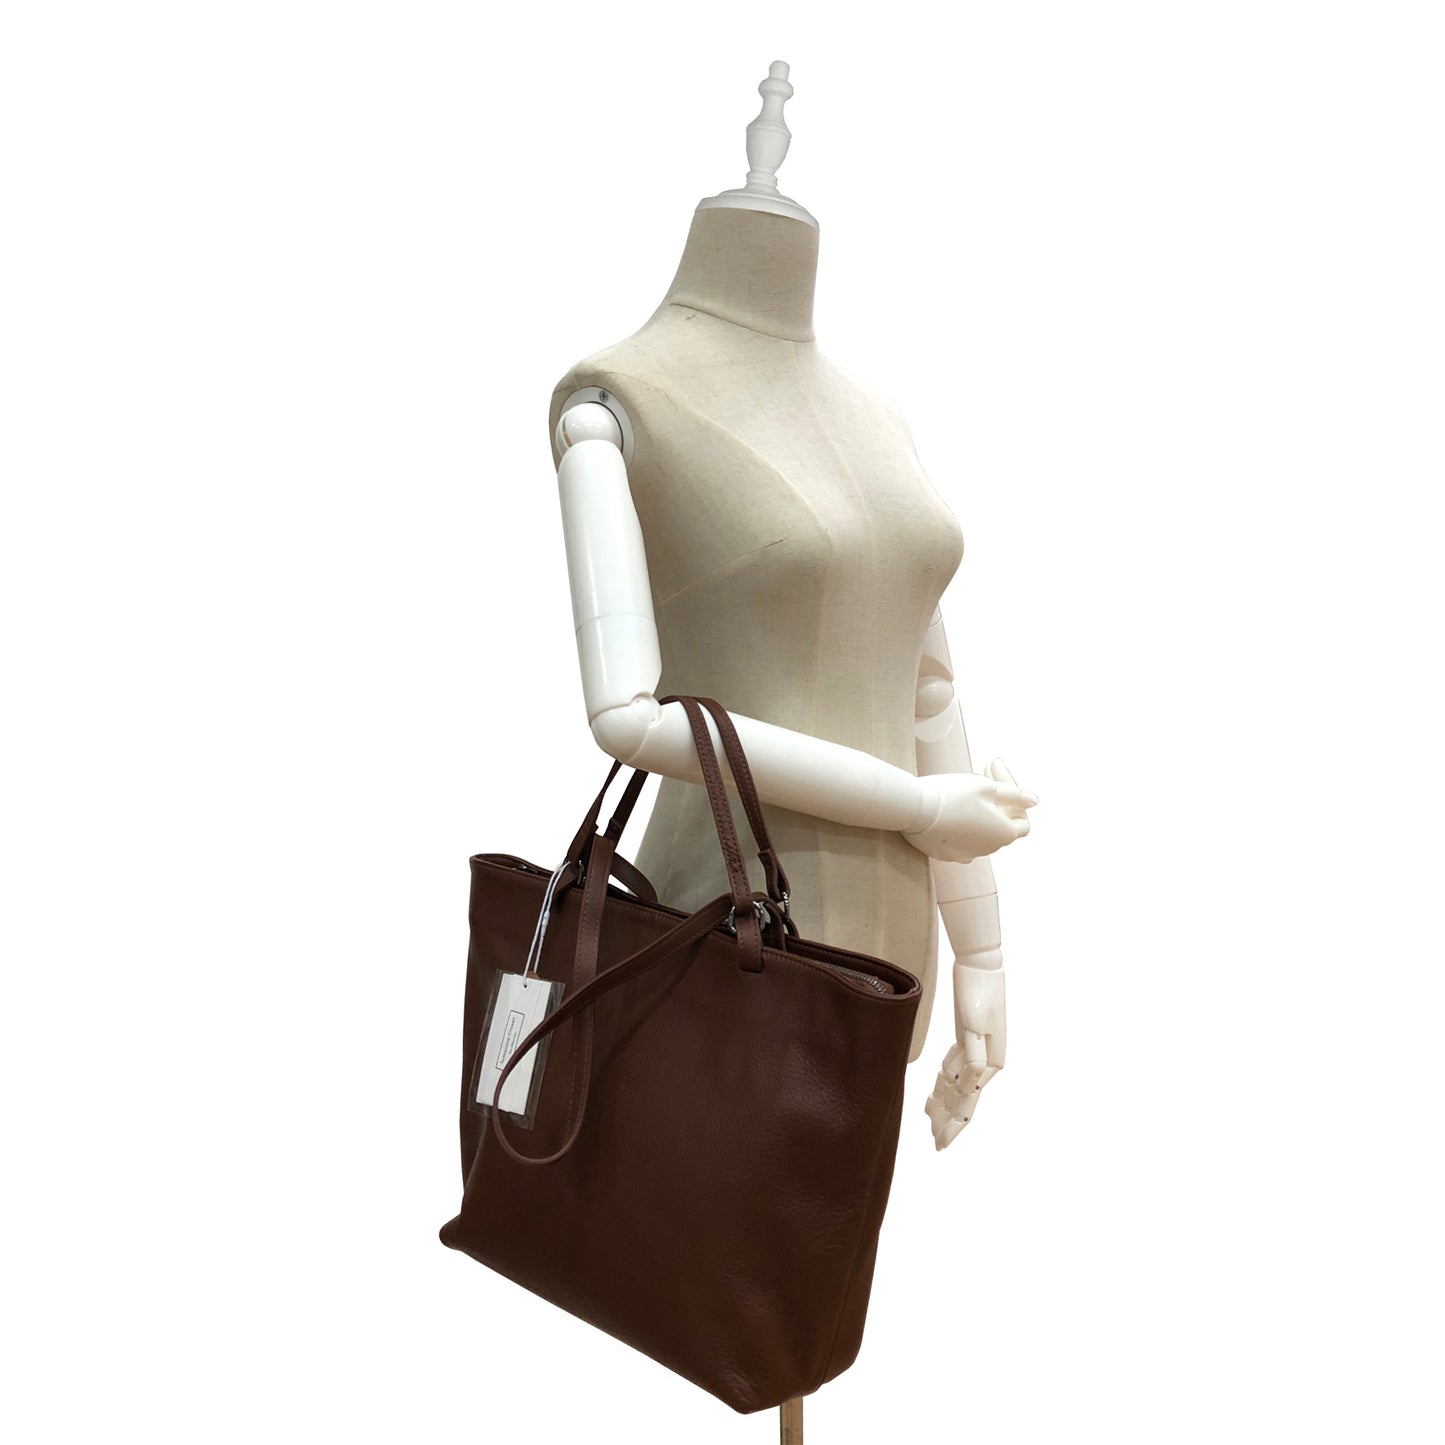 Women's genuine cowhide leather handbag two-way Depaule design